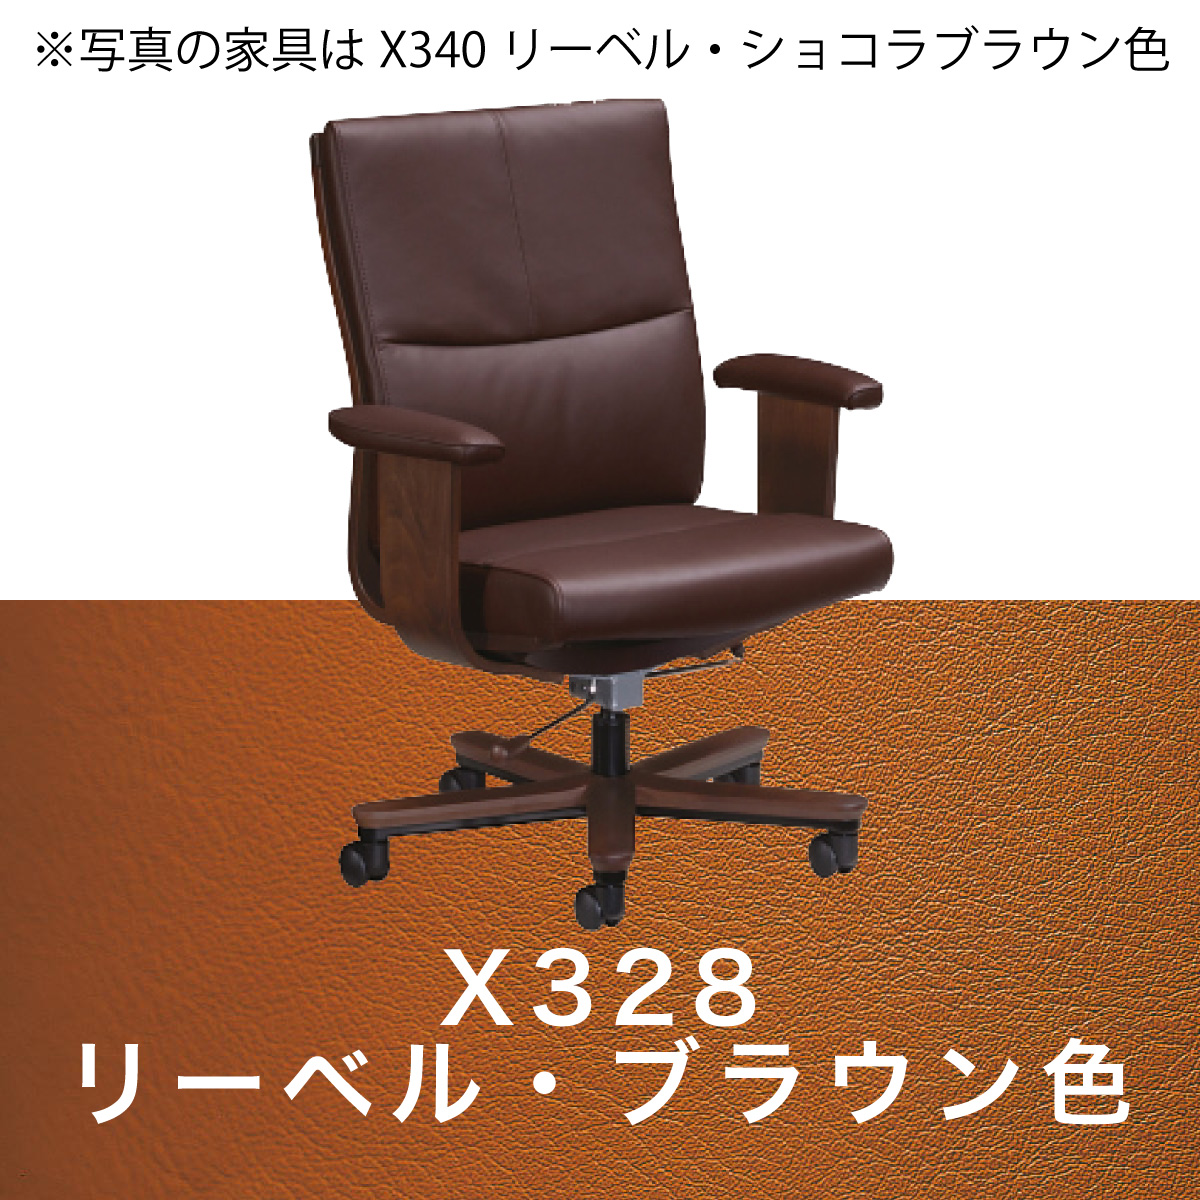 カリモク 本革張デスクチェア XT5830 肘付 レザー 座り心地研究 アーム 